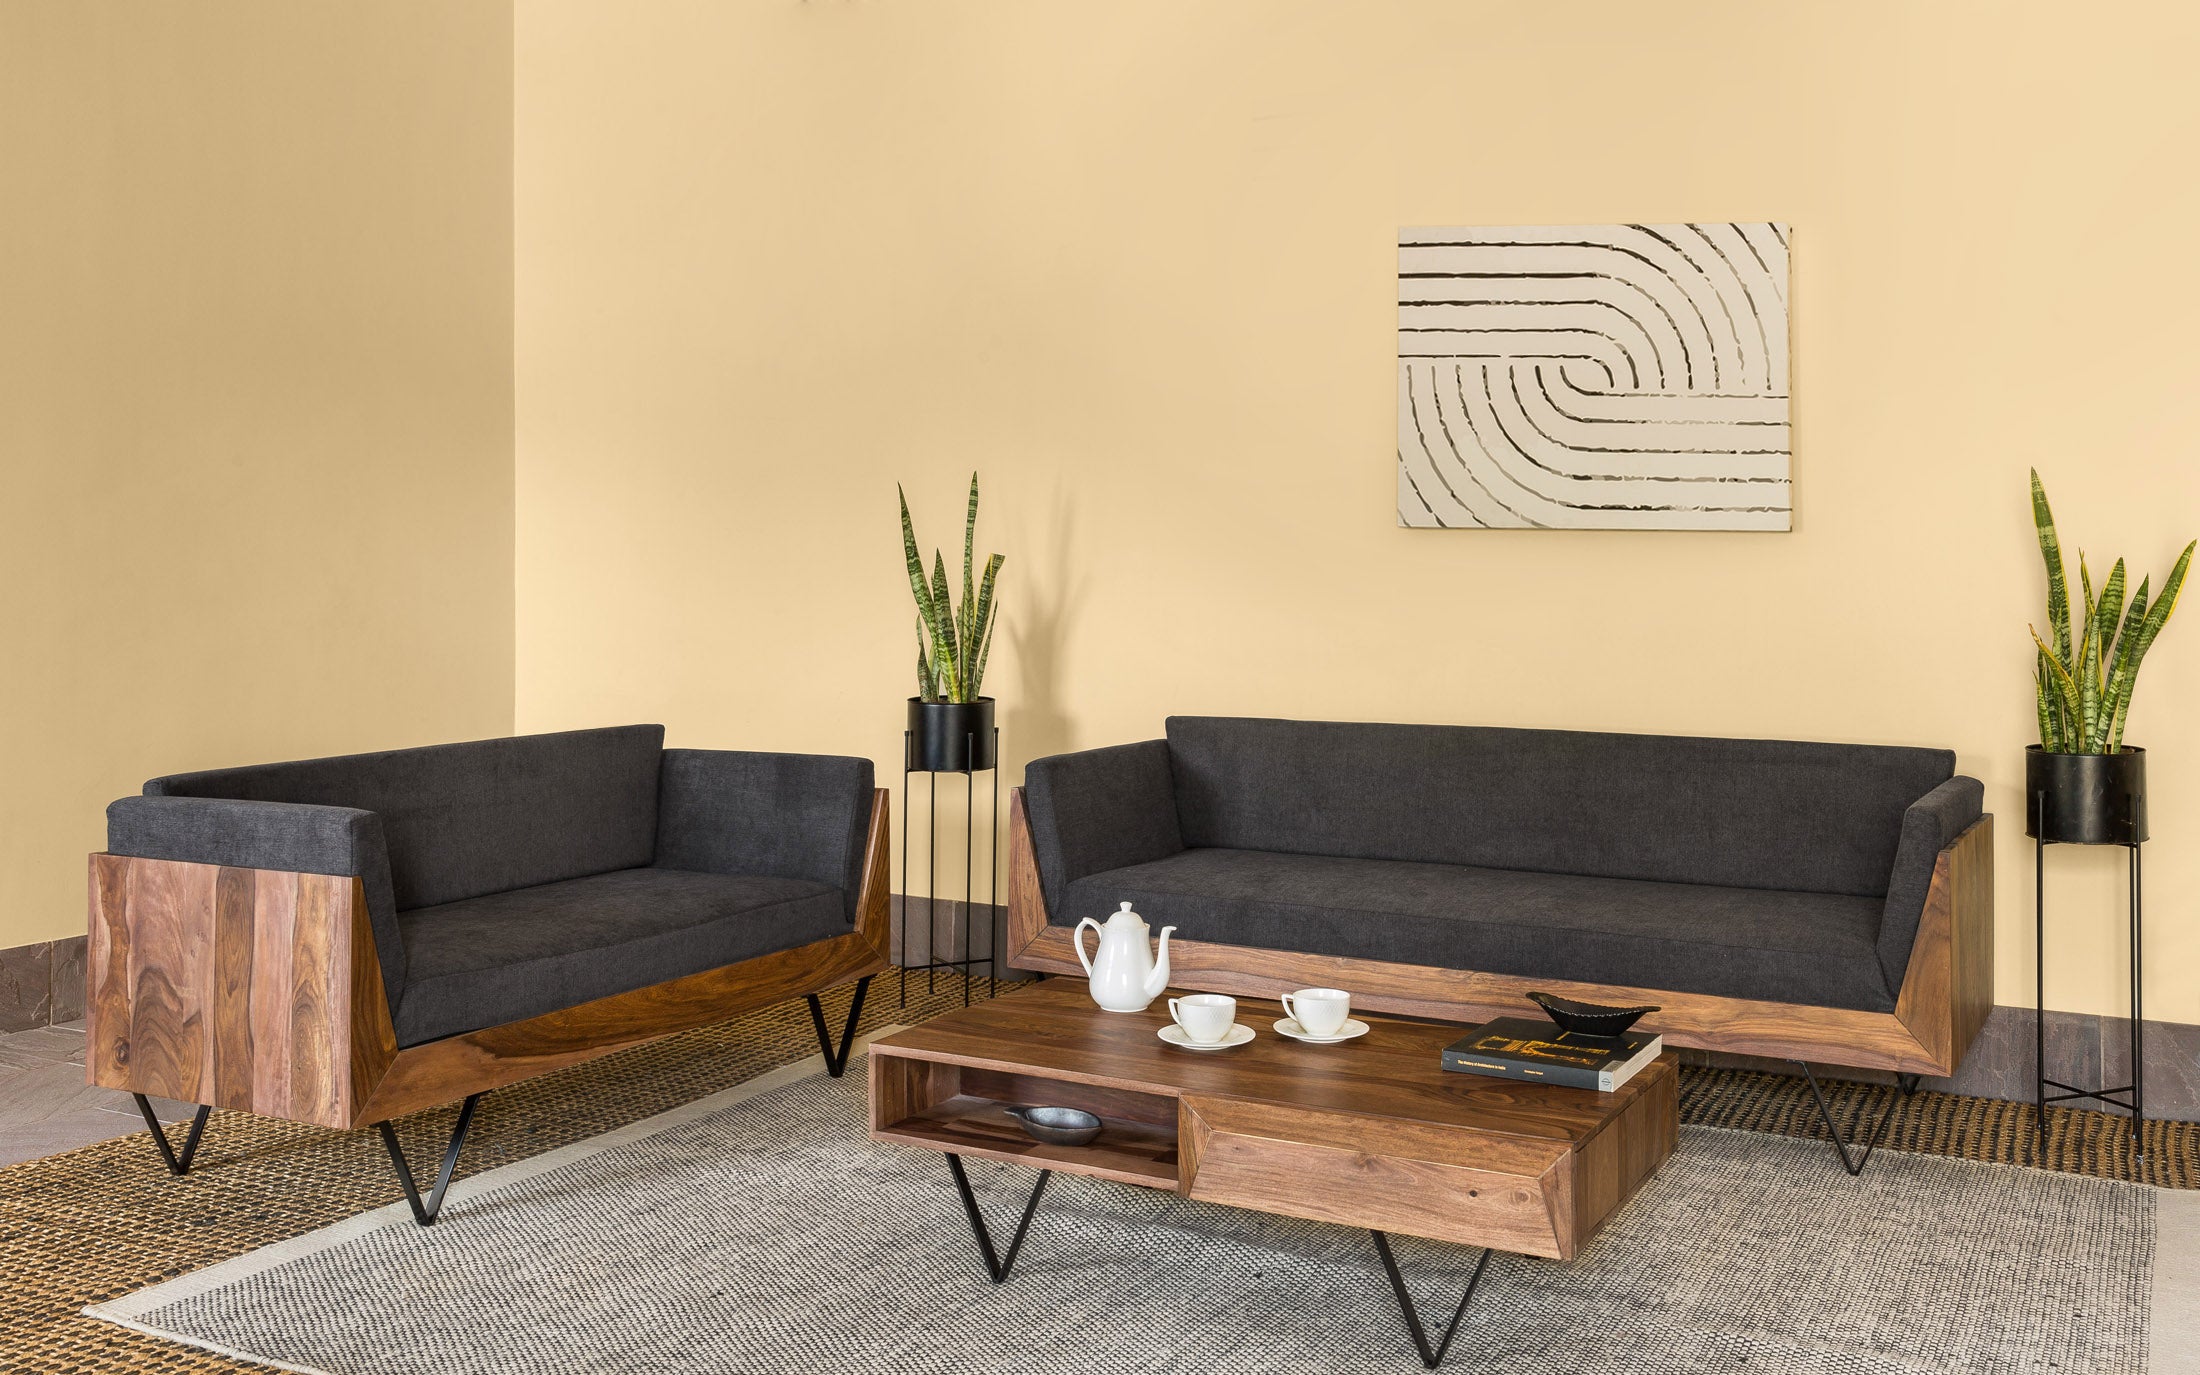 Contemporary Chic living room design